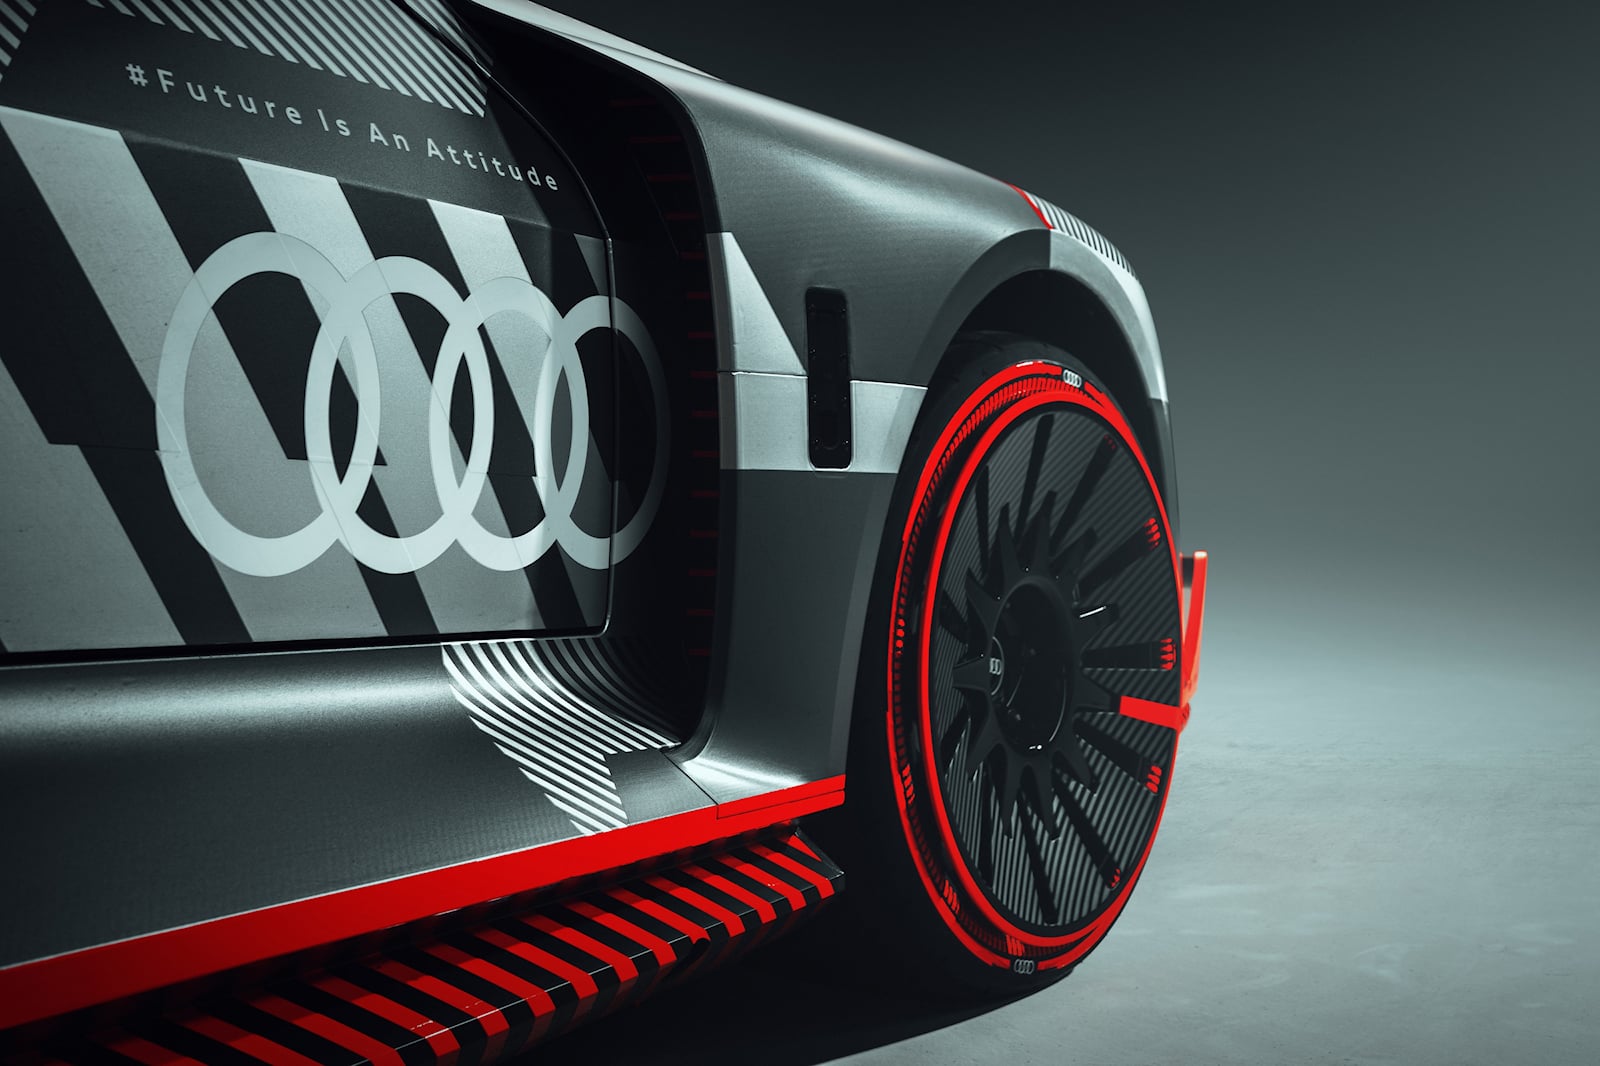 «S1 Hoonitron сочетает в себе многое из того, чем Audi уже славилась в 1980-х годах», - говорит Блок. «Например, впечатляющая аэродинамика автомобиля теперь преобразована в совершенно современную форму. Я думаю, это здорово, что дизайнеры Audi черпал